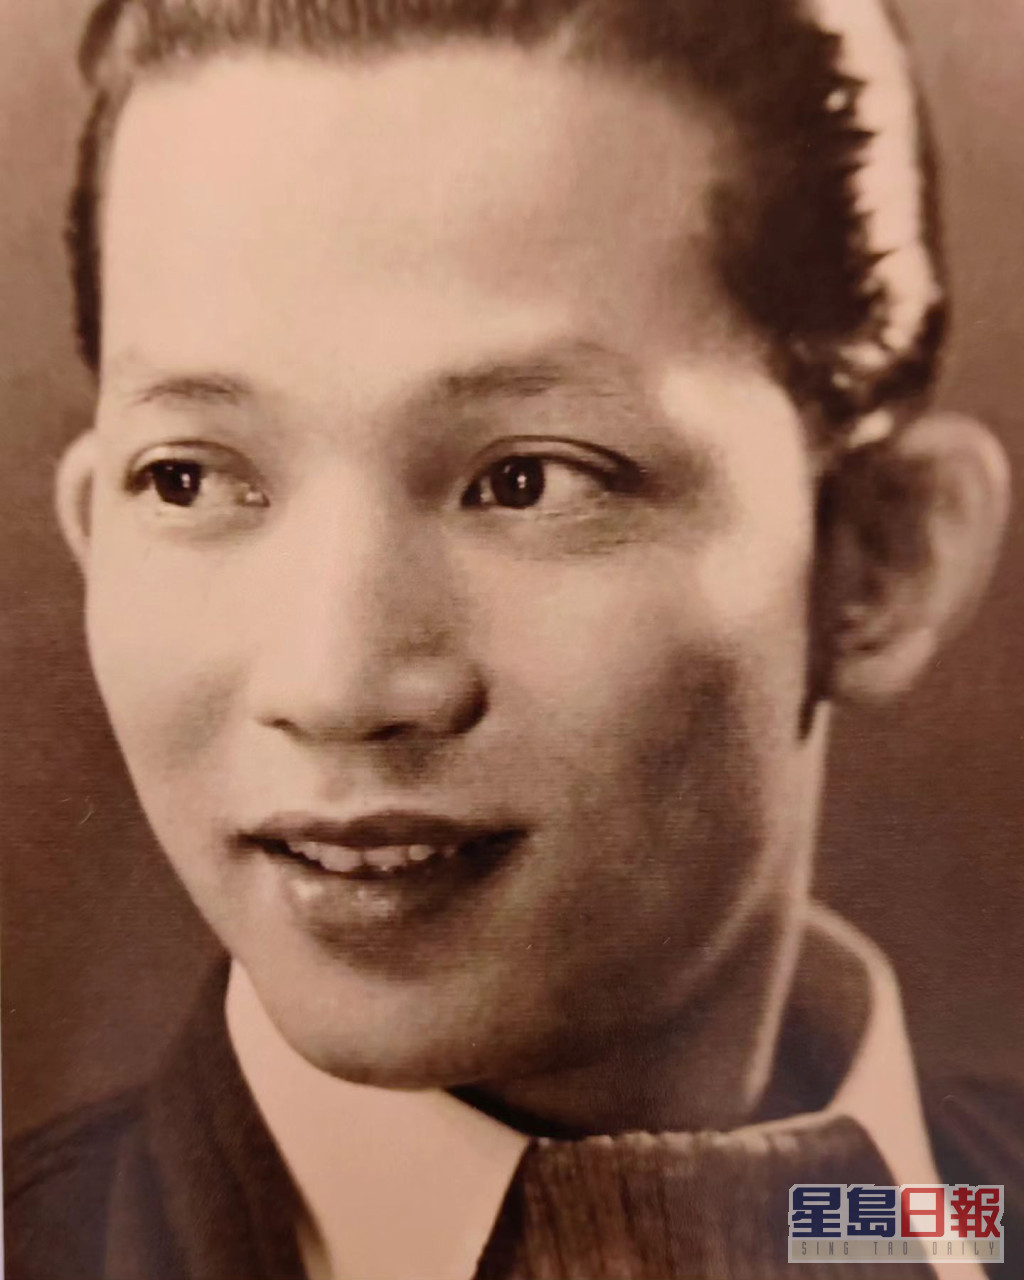 馮素波的爸爸是已故導演兼演員馮峰。